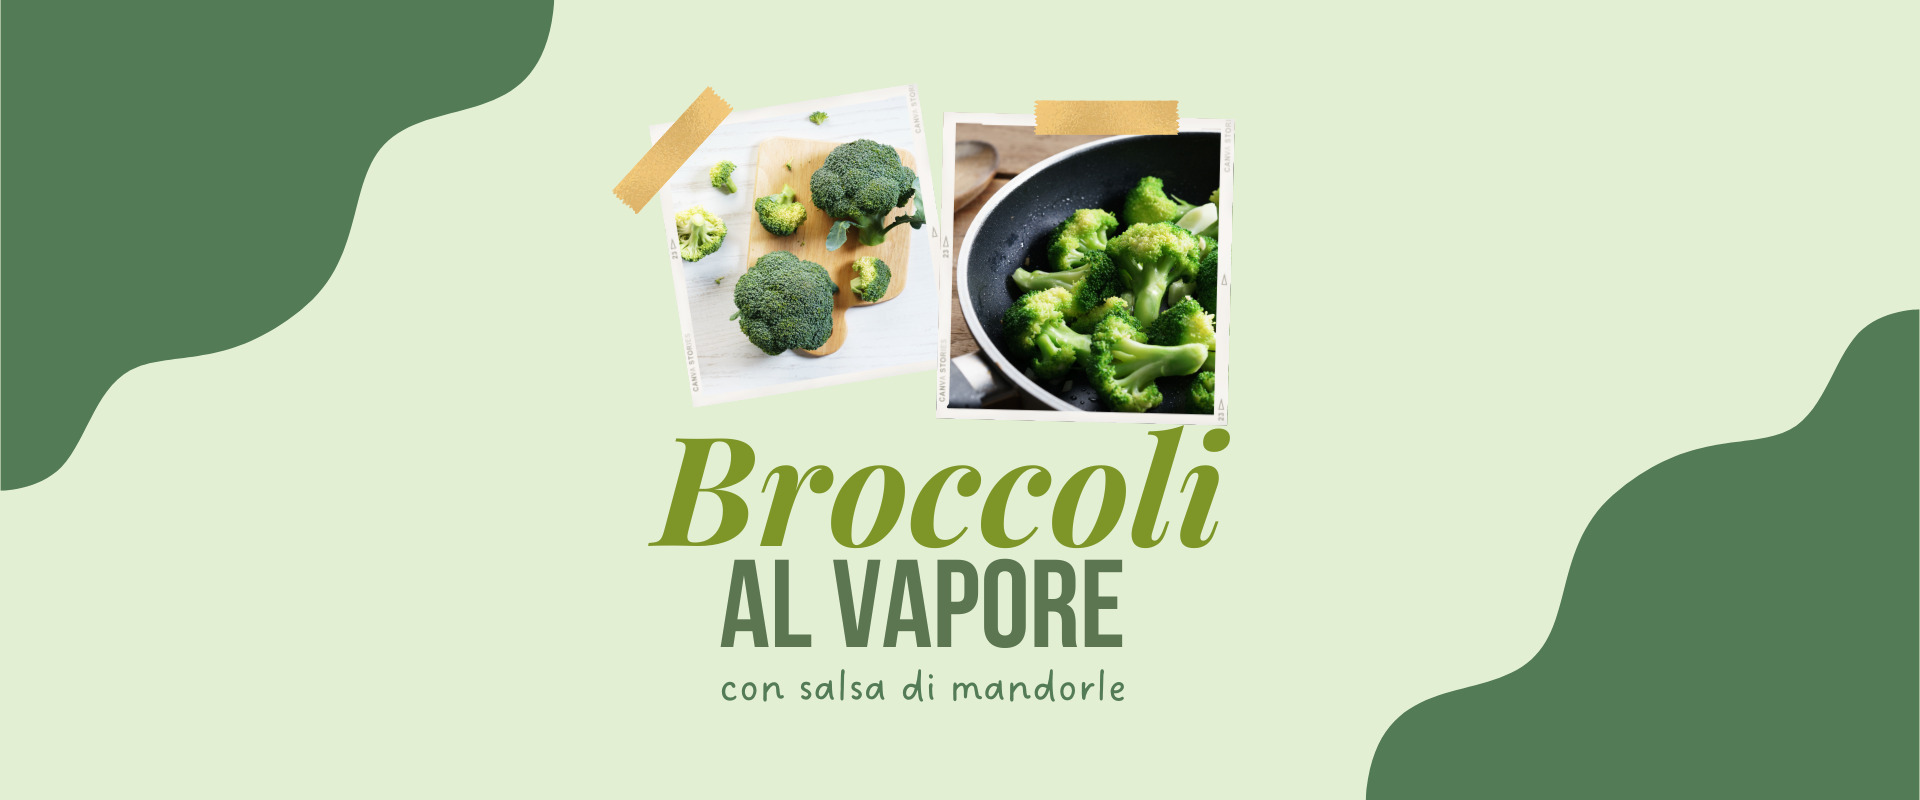 Broccoli al vapore con salsa di mandorle